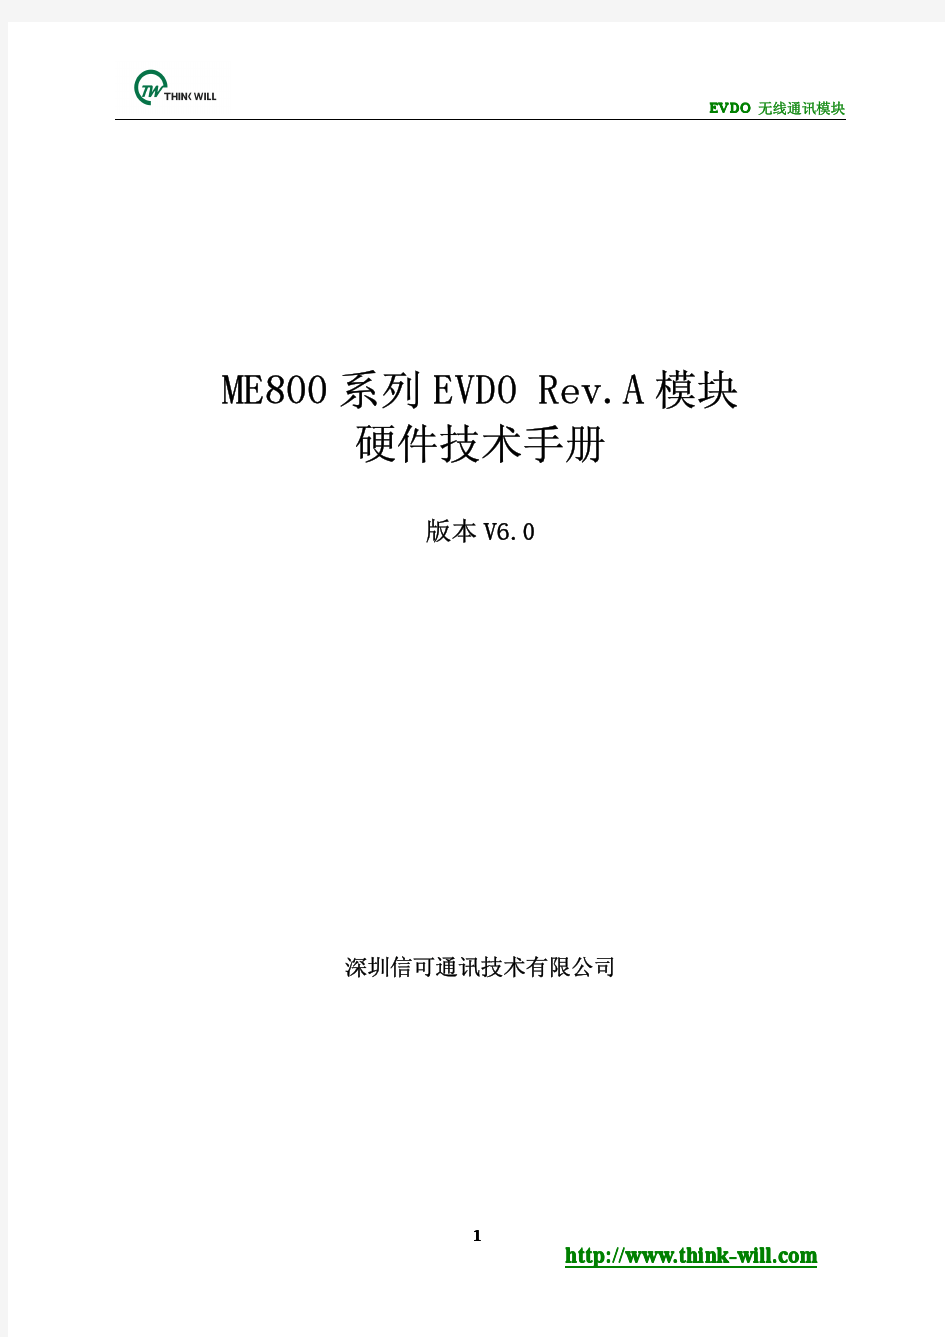 ME800 EVDO Rev.A模块硬件技术手册V6.0(20130123)